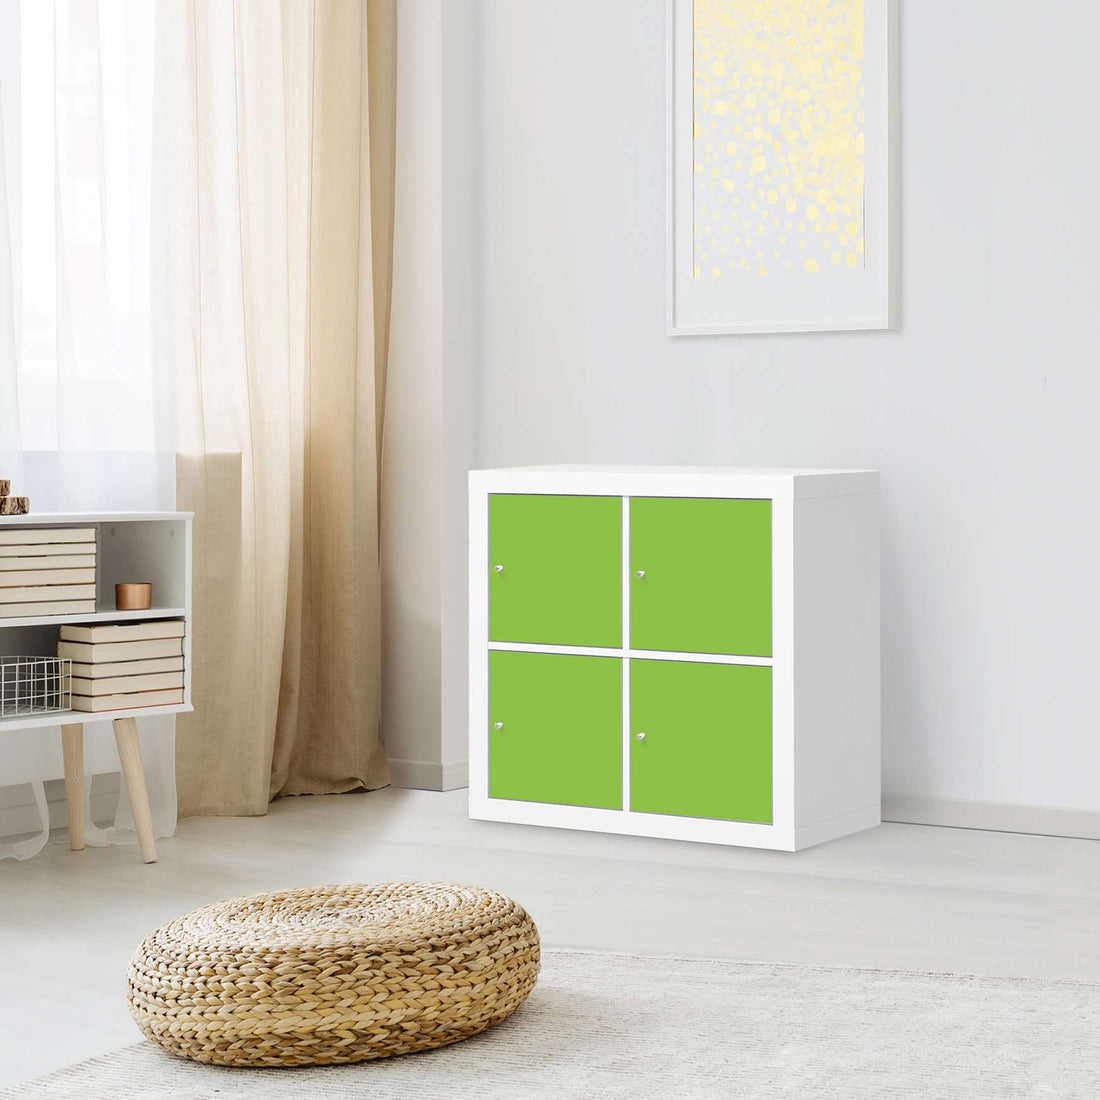 Möbelfolie Hellgrün Dark - IKEA Expedit Regal 4 Türen - Wohnzimmer